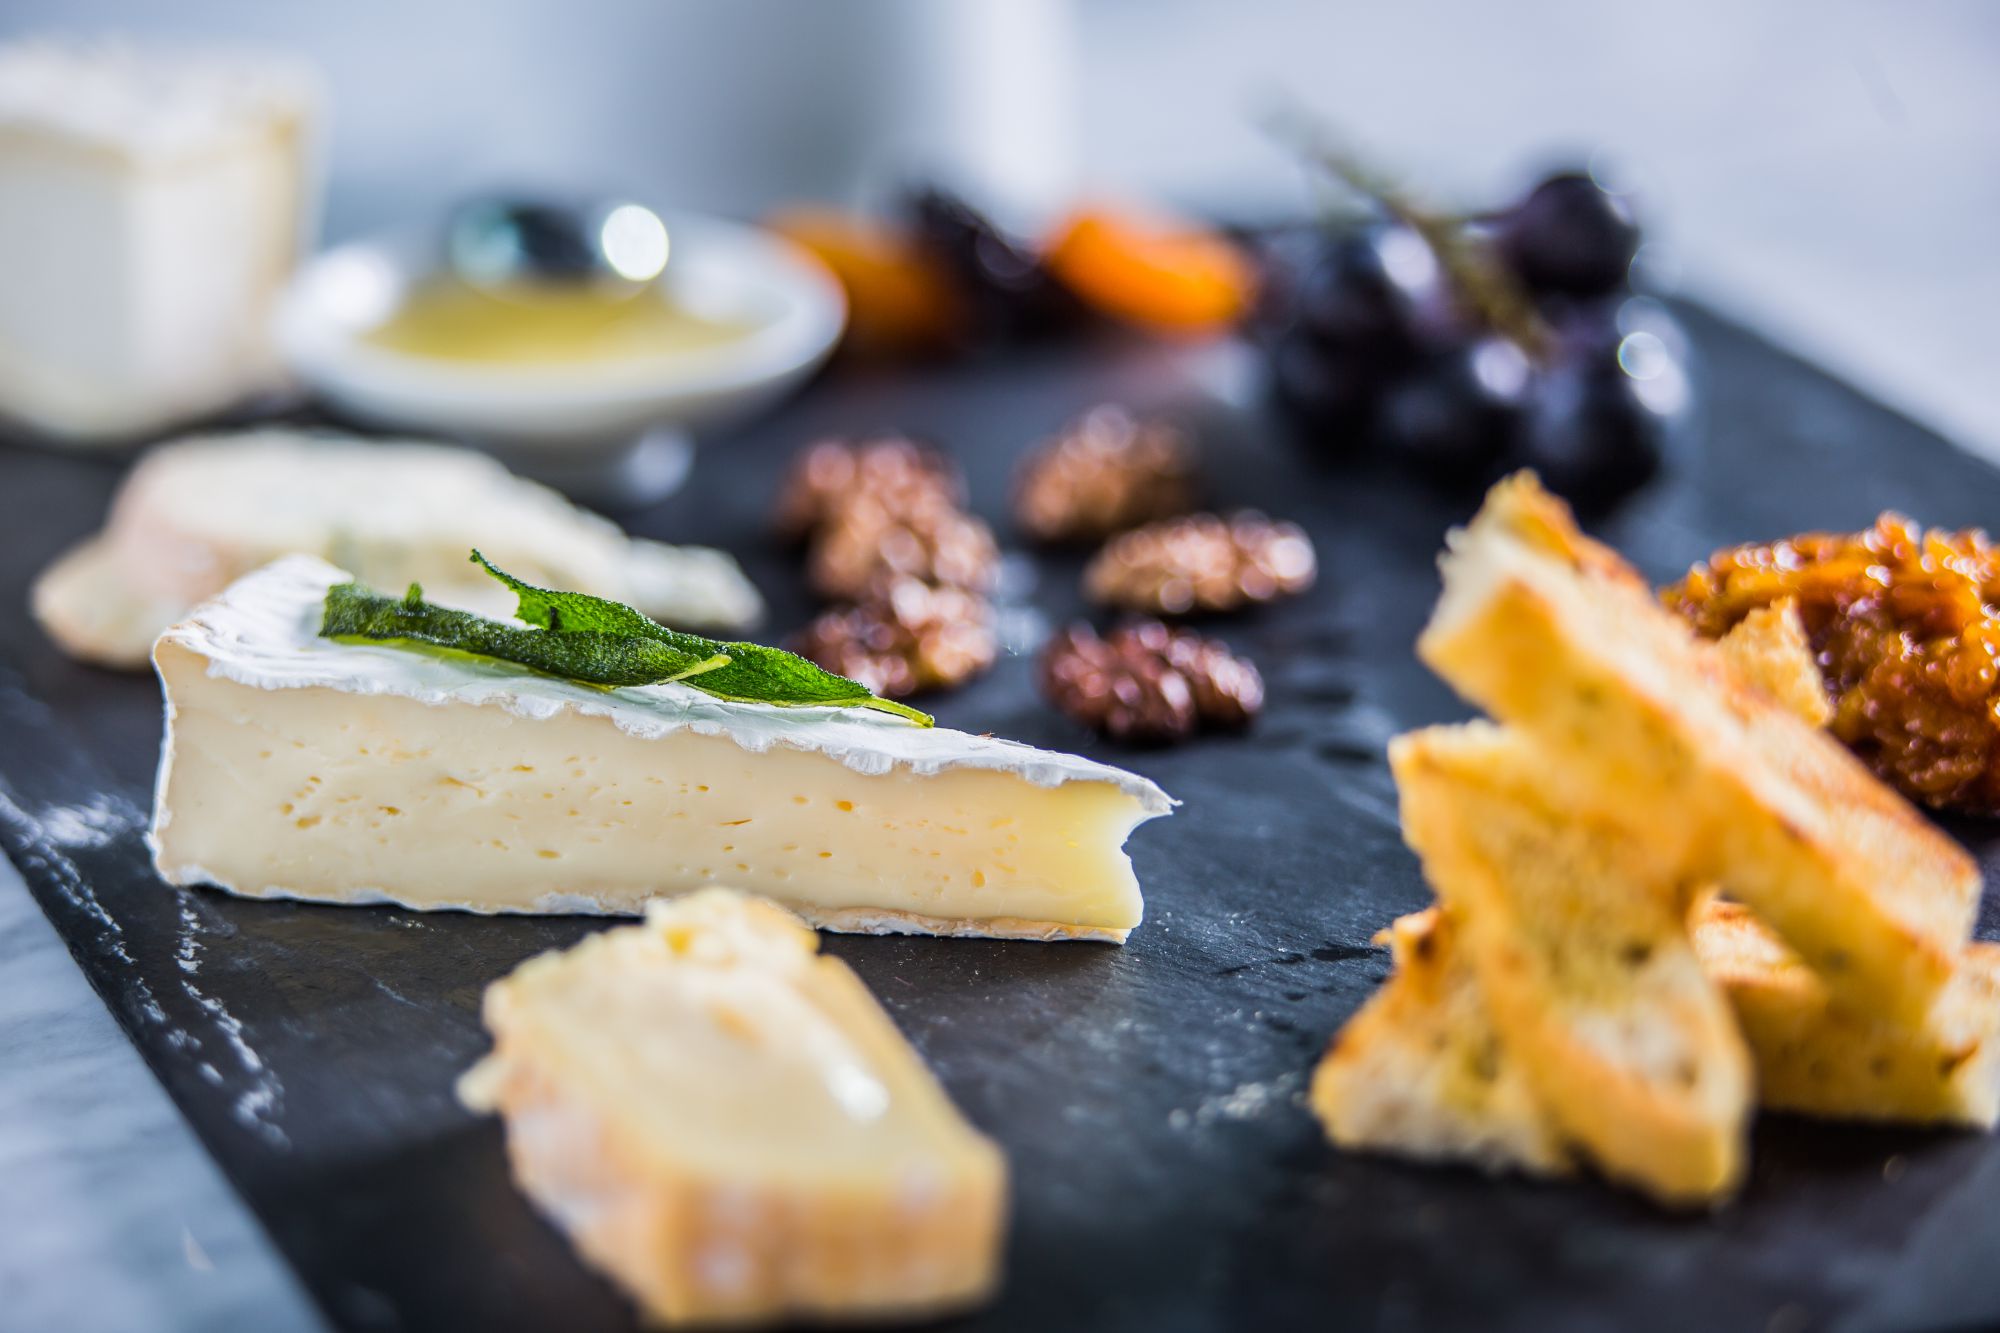 Le plateau de fromages de La Brasserie FRAME